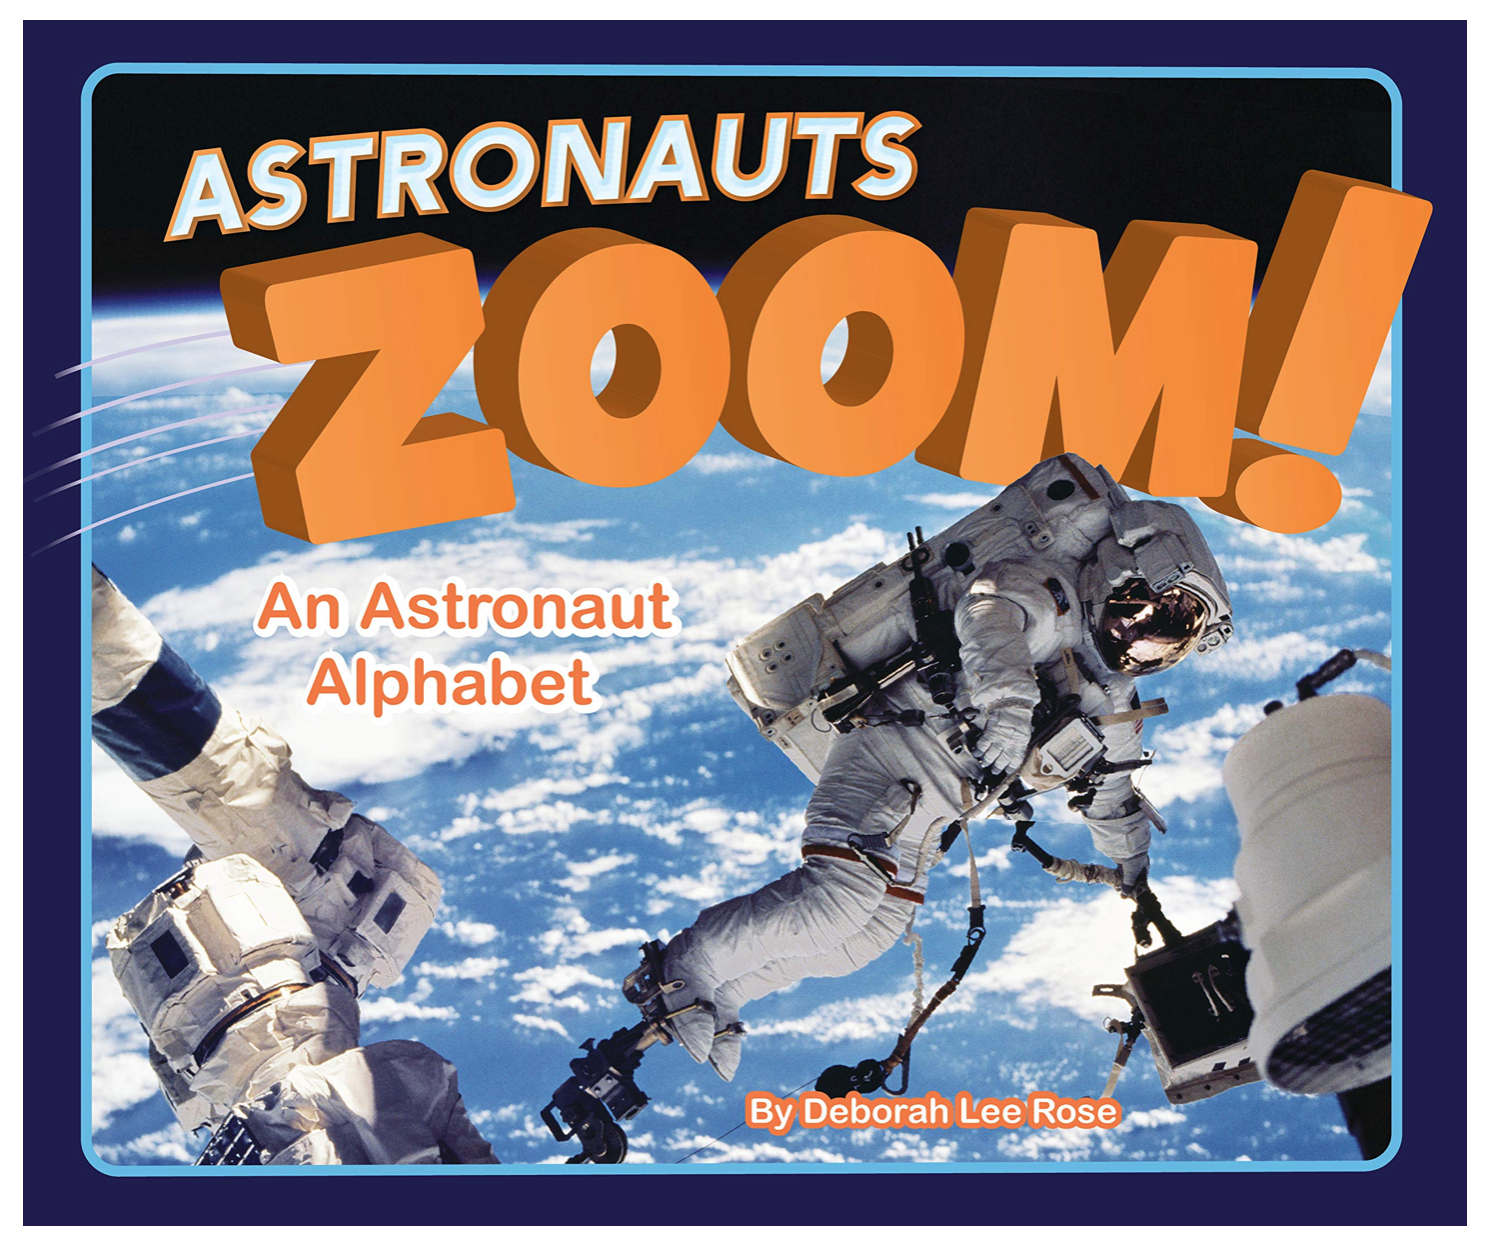 Astronauts Zoom